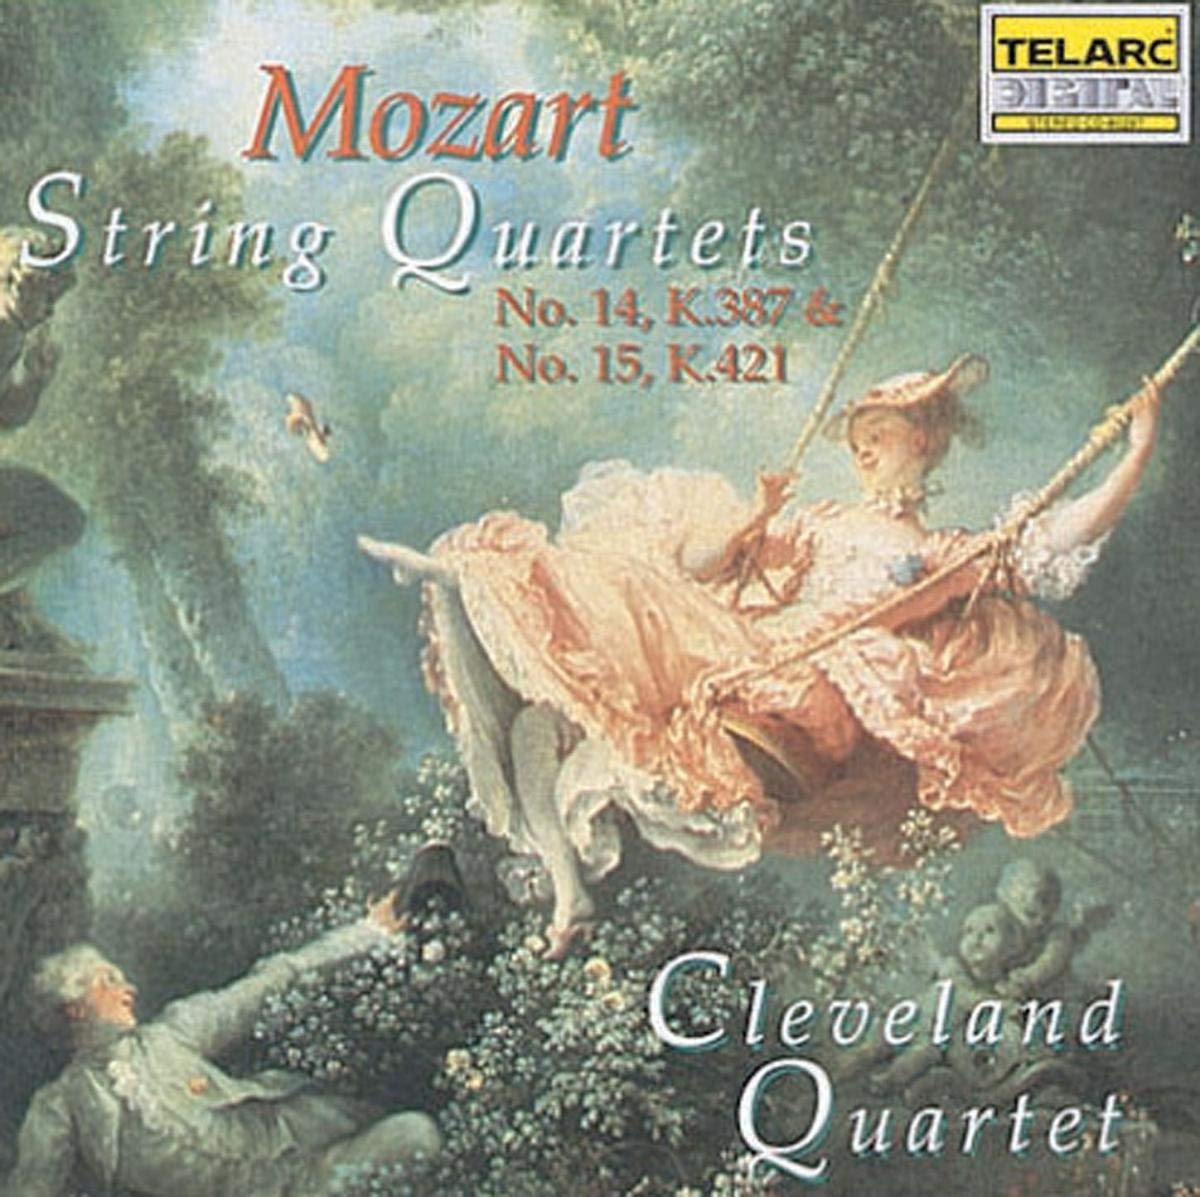 MOZART: STRING QUARTETS NO. 14 & 15 - Cleveland Quartet